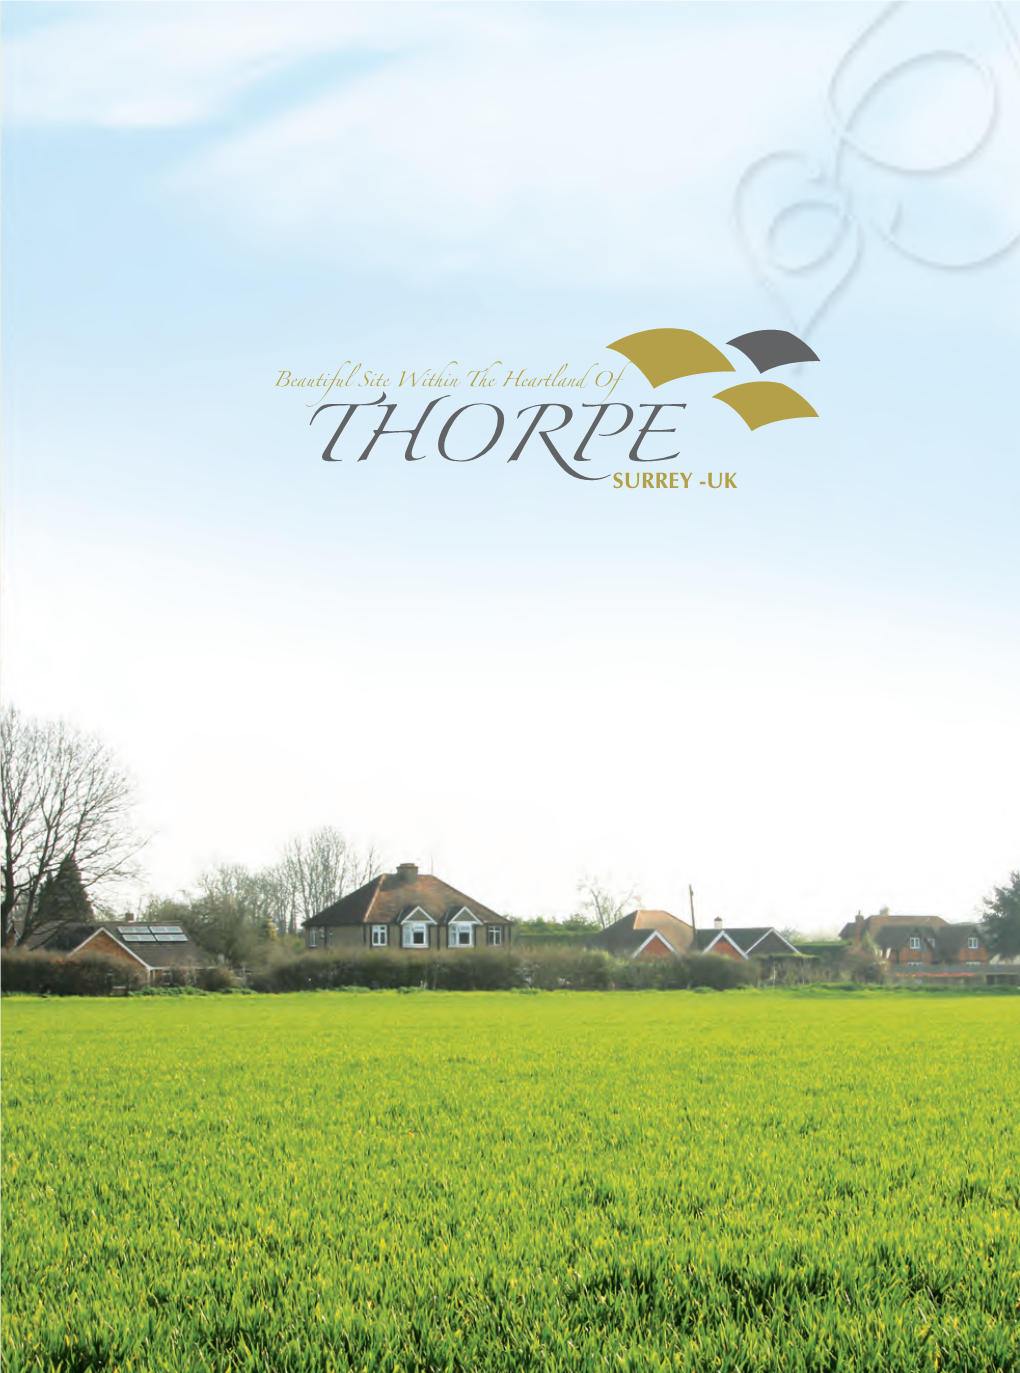 Thorpe Surrey -Uk Thorpe